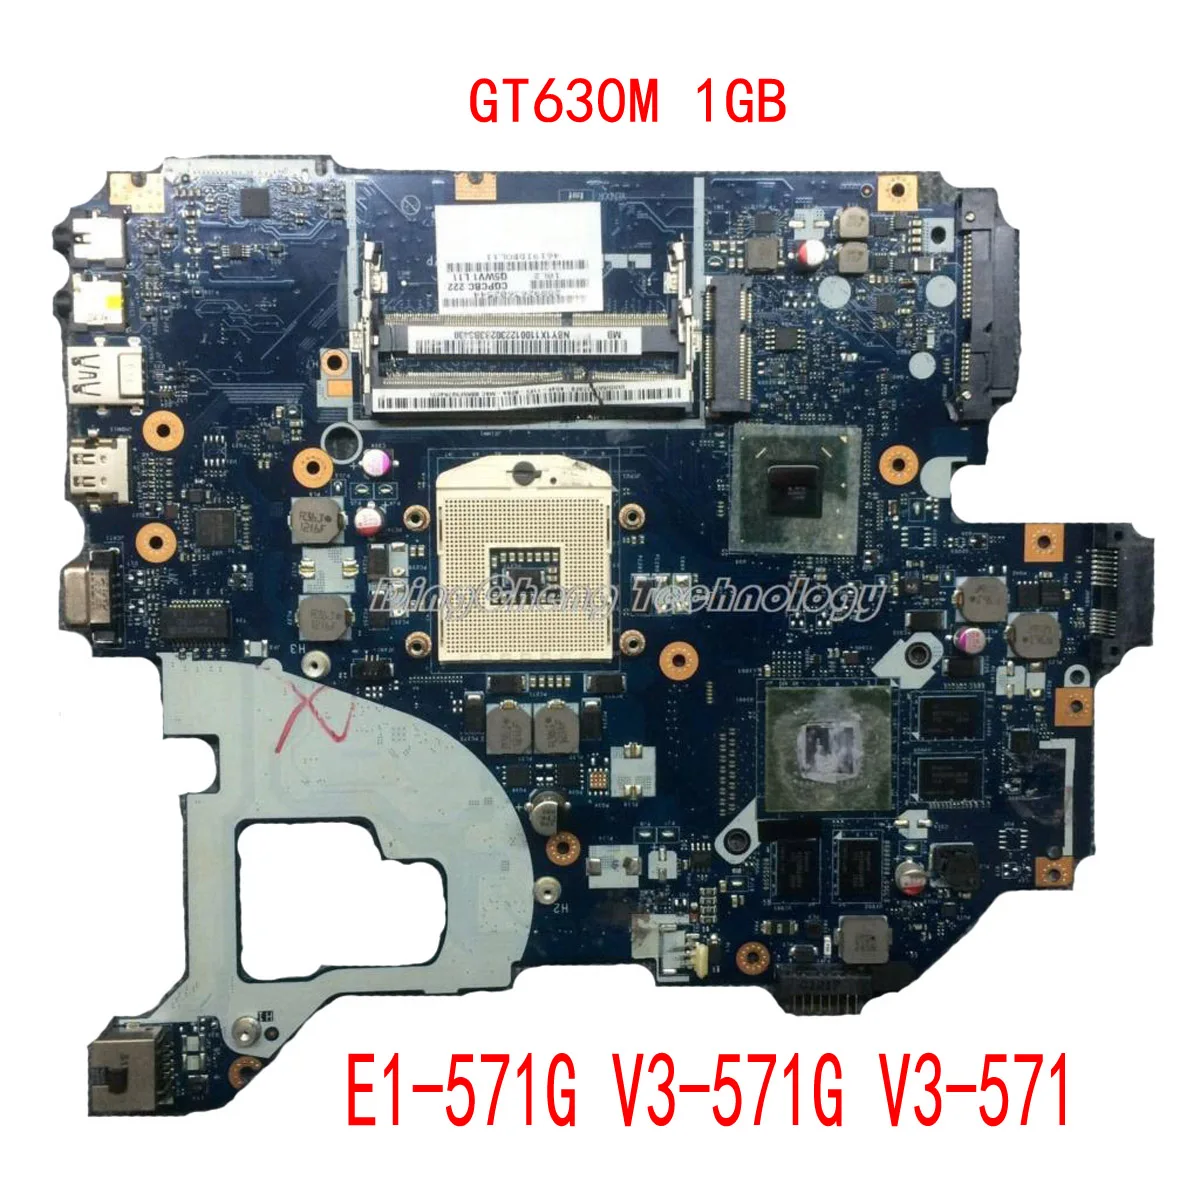 

Laptop Motherboard for ACER E1-571G V3-571G V3-571 q5wvh LA-7912P NBM6B11001 Mainboard GT630M 1GB HM77 PGA989 DDR3 100% tested